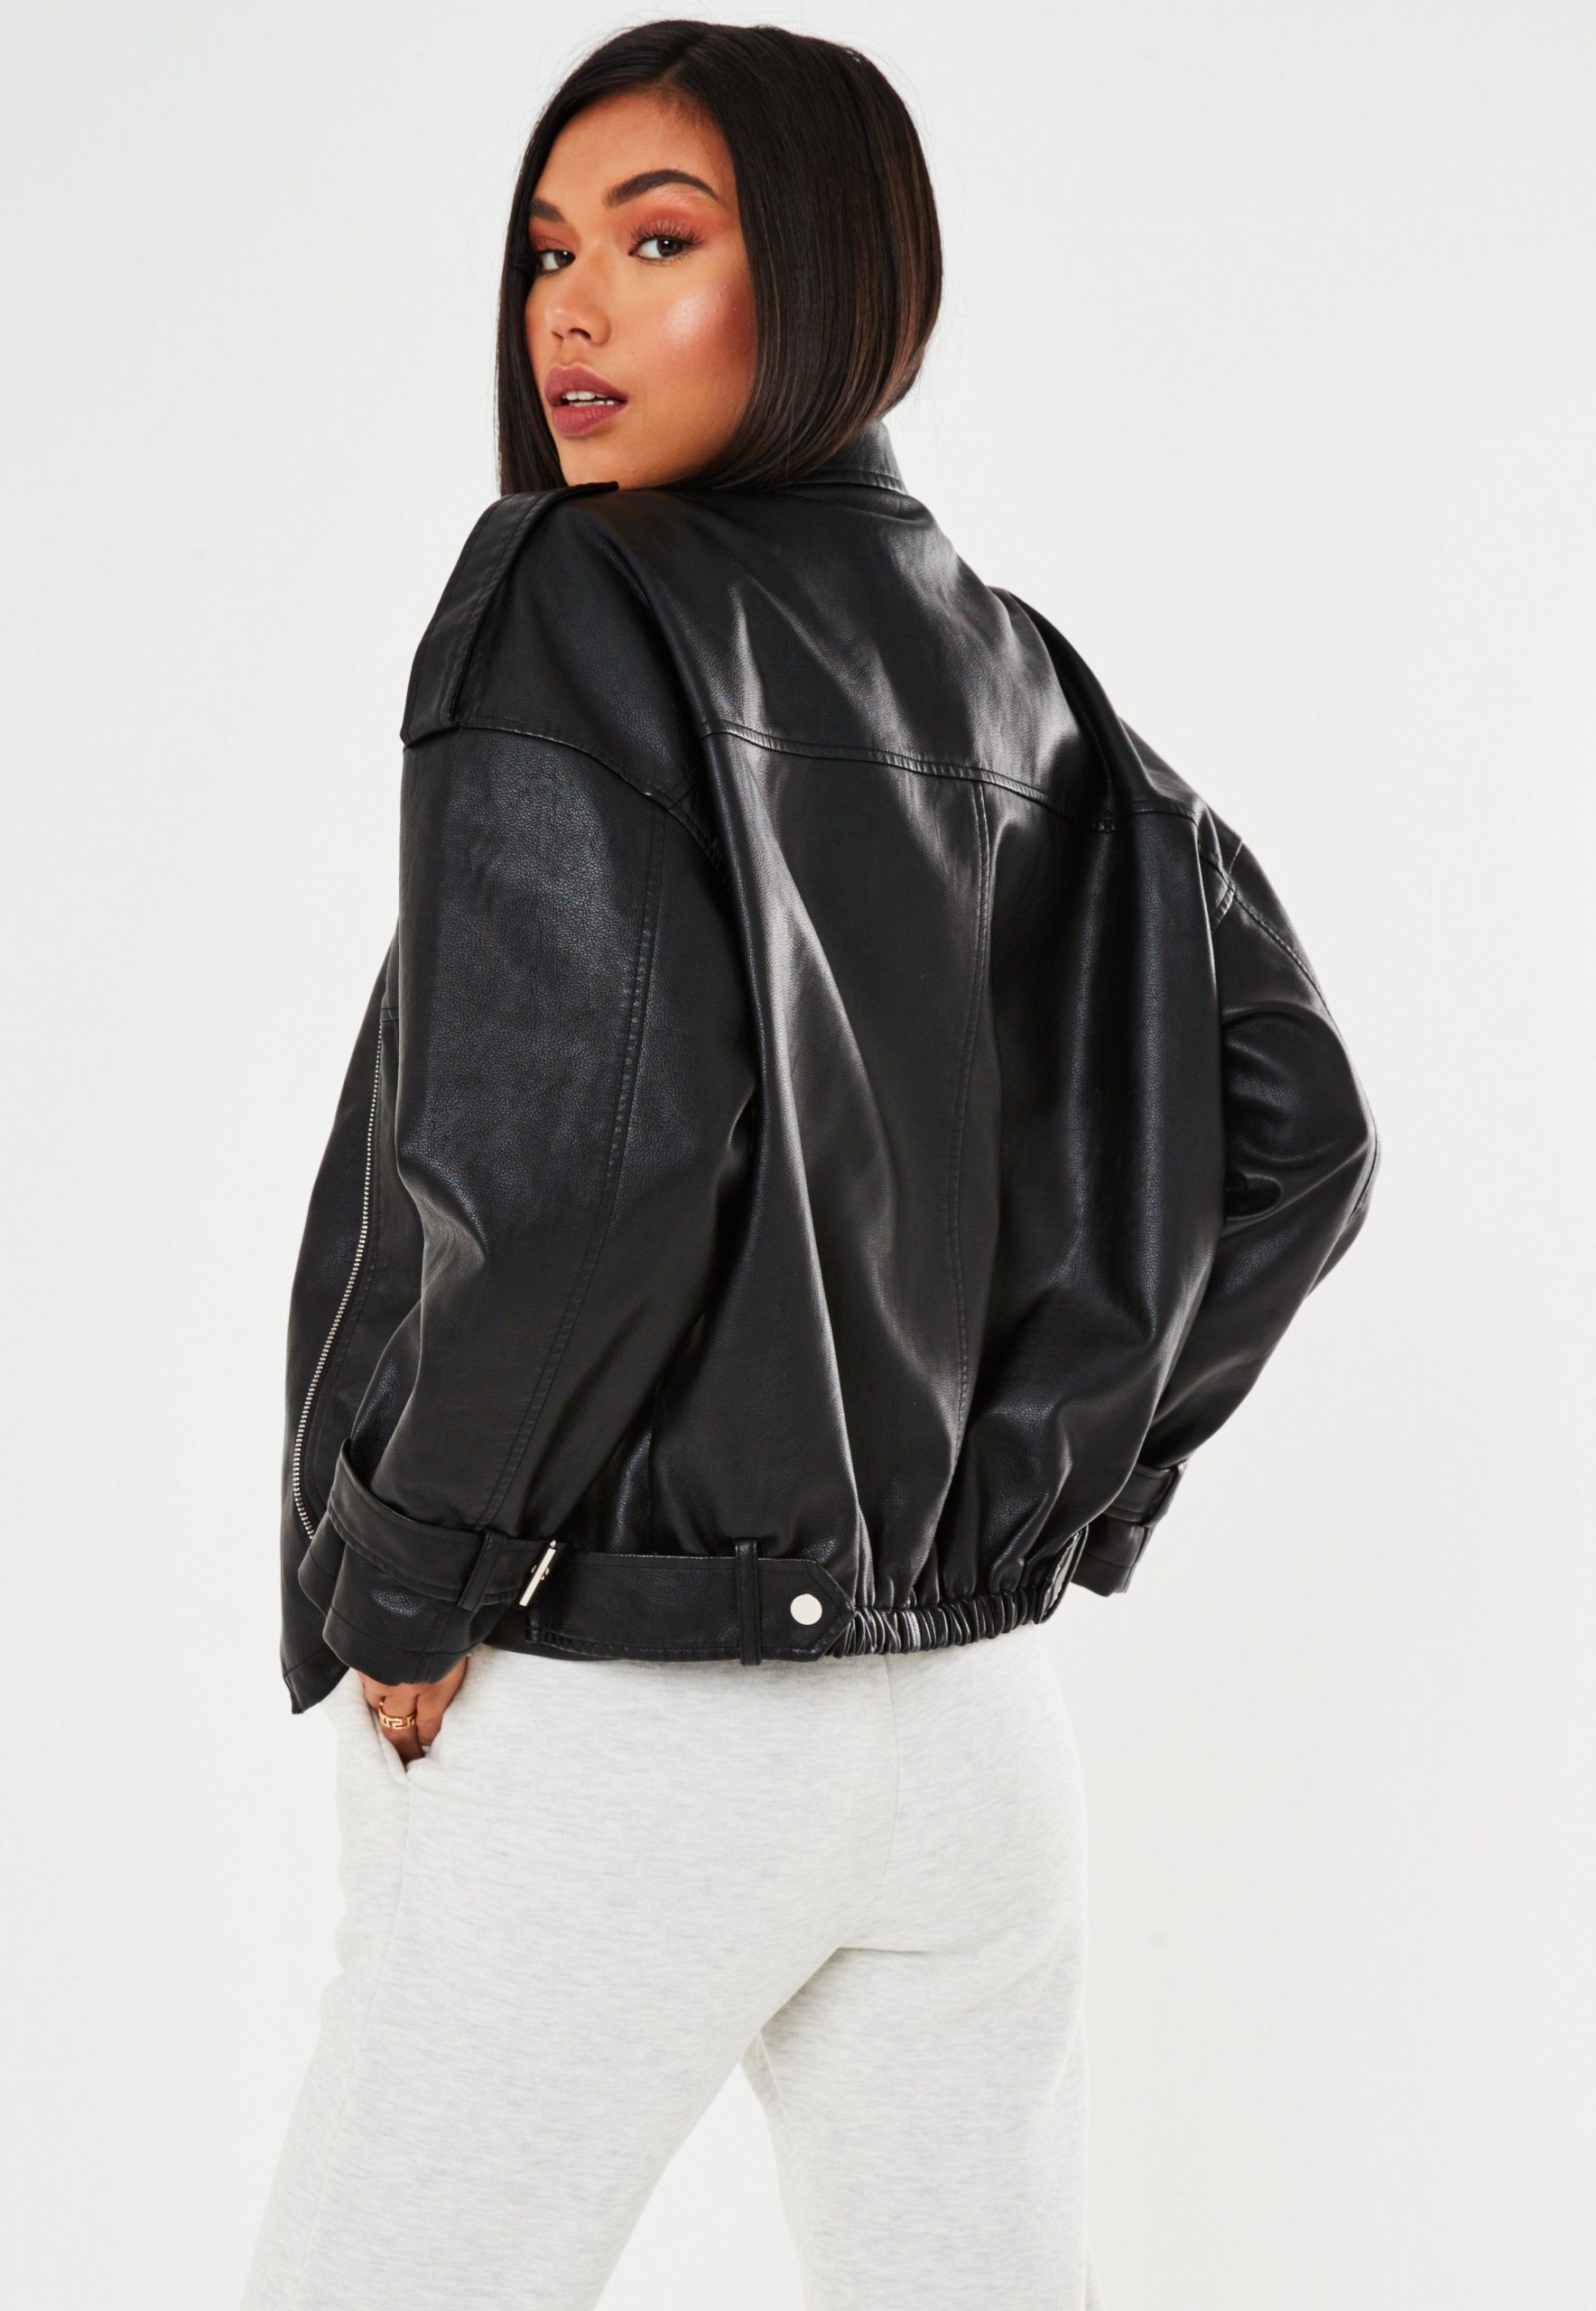 Oversized Leather Jacket – careyfashion.com